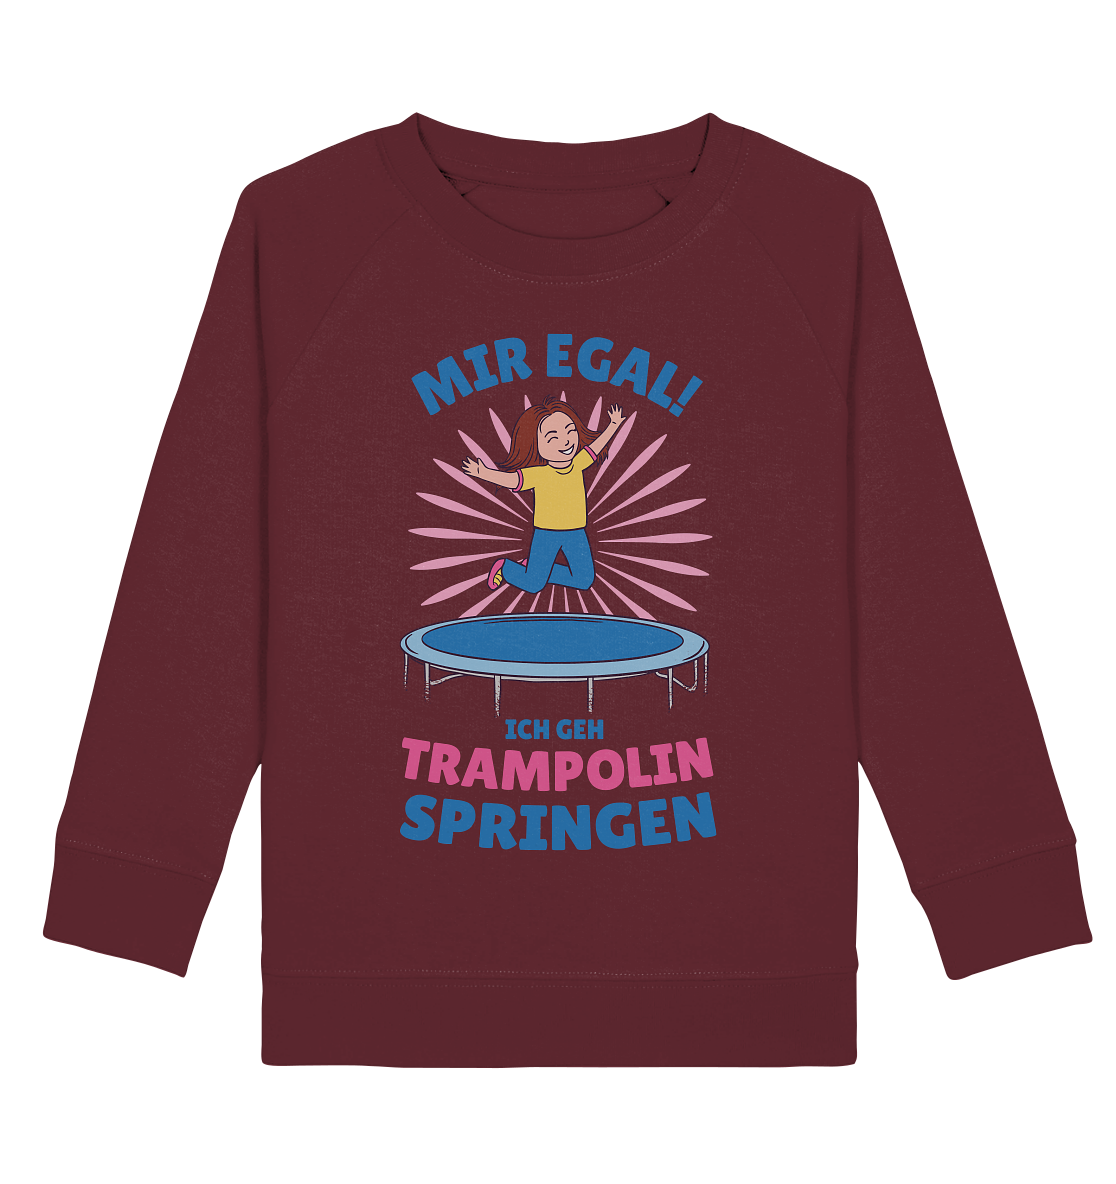 Mir egal ich geh Trampolin springen  - Kids Organic Sweatshirt